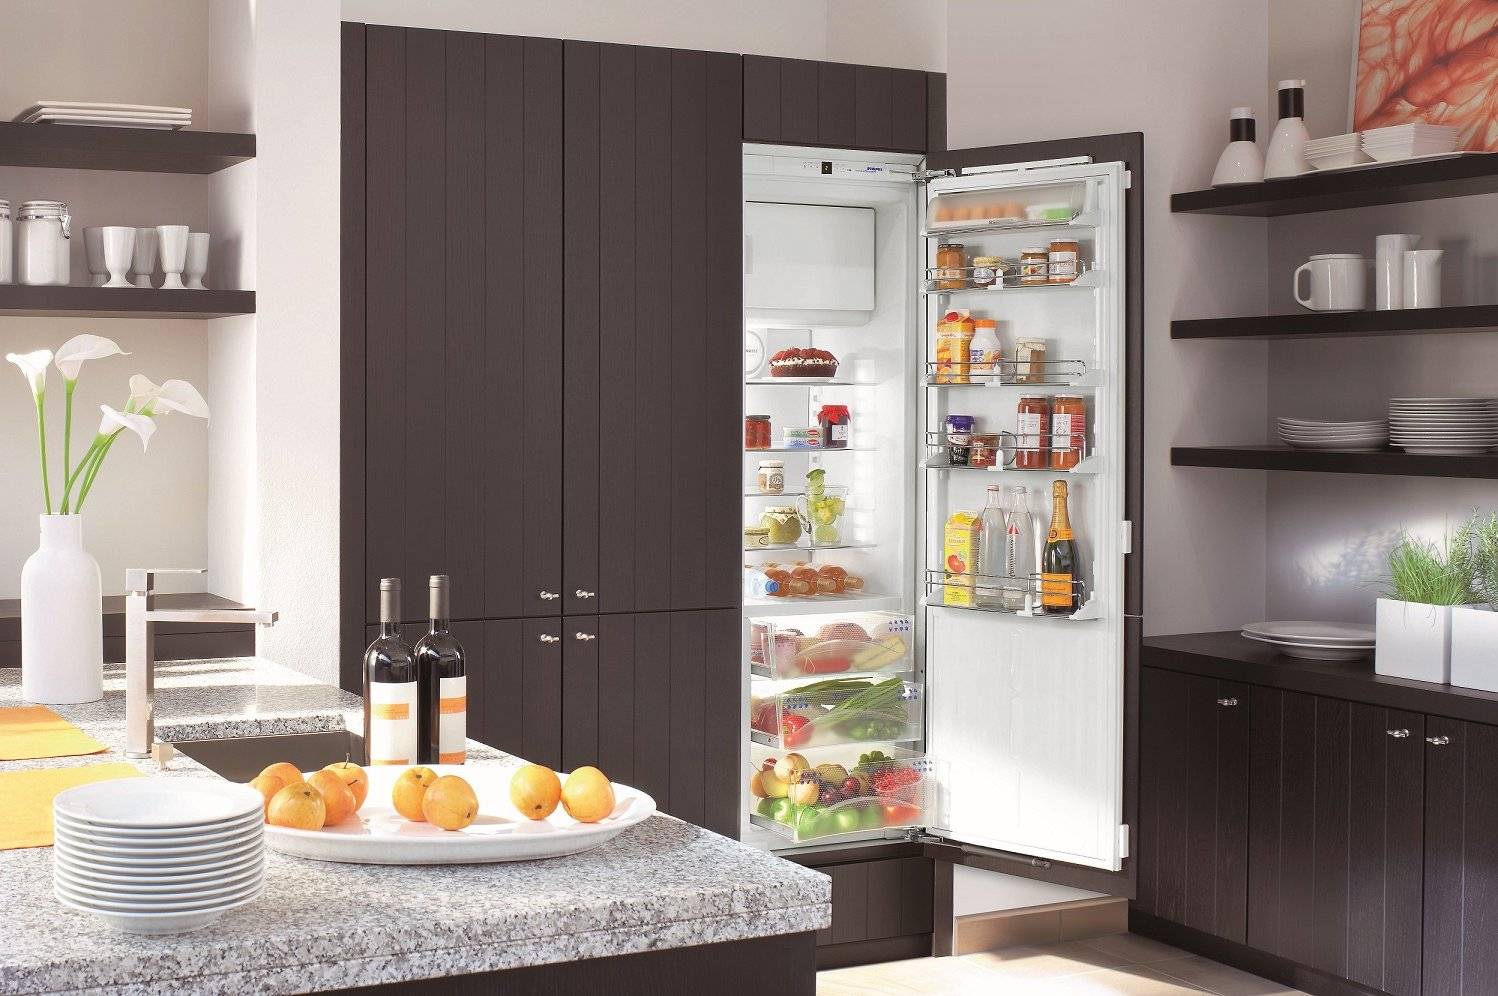 Как выбрать хороший холодильник без навязчивых советов консультанта - лайфхакер